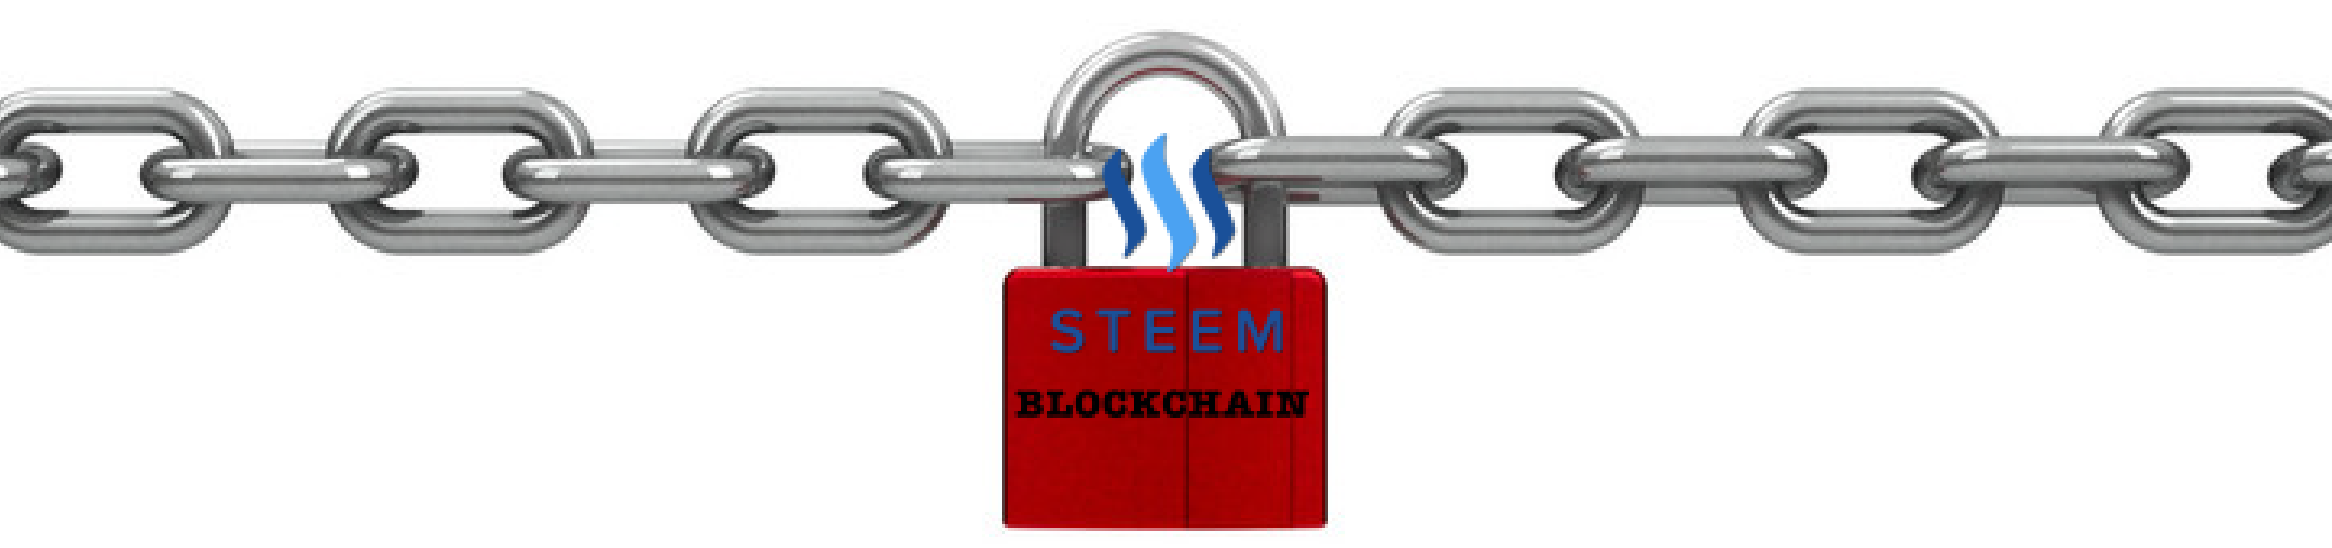 steem blockchain banner.png